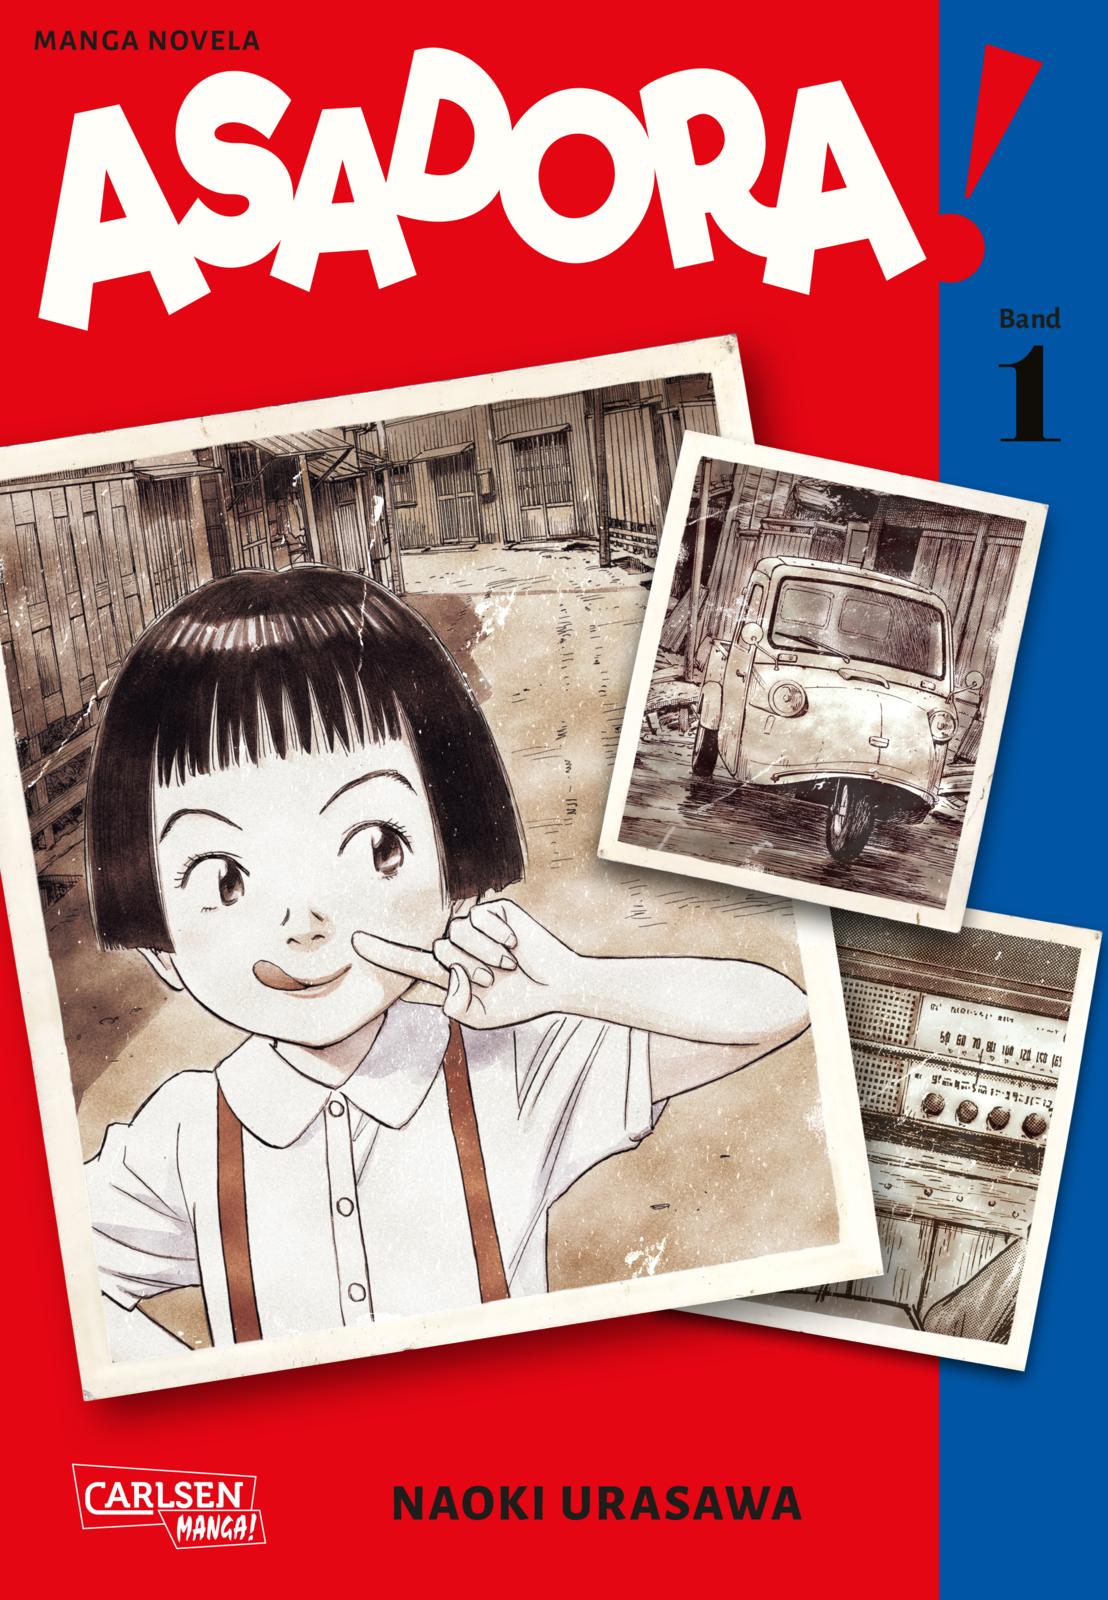 Cover, Asadora, Carlsen Manga